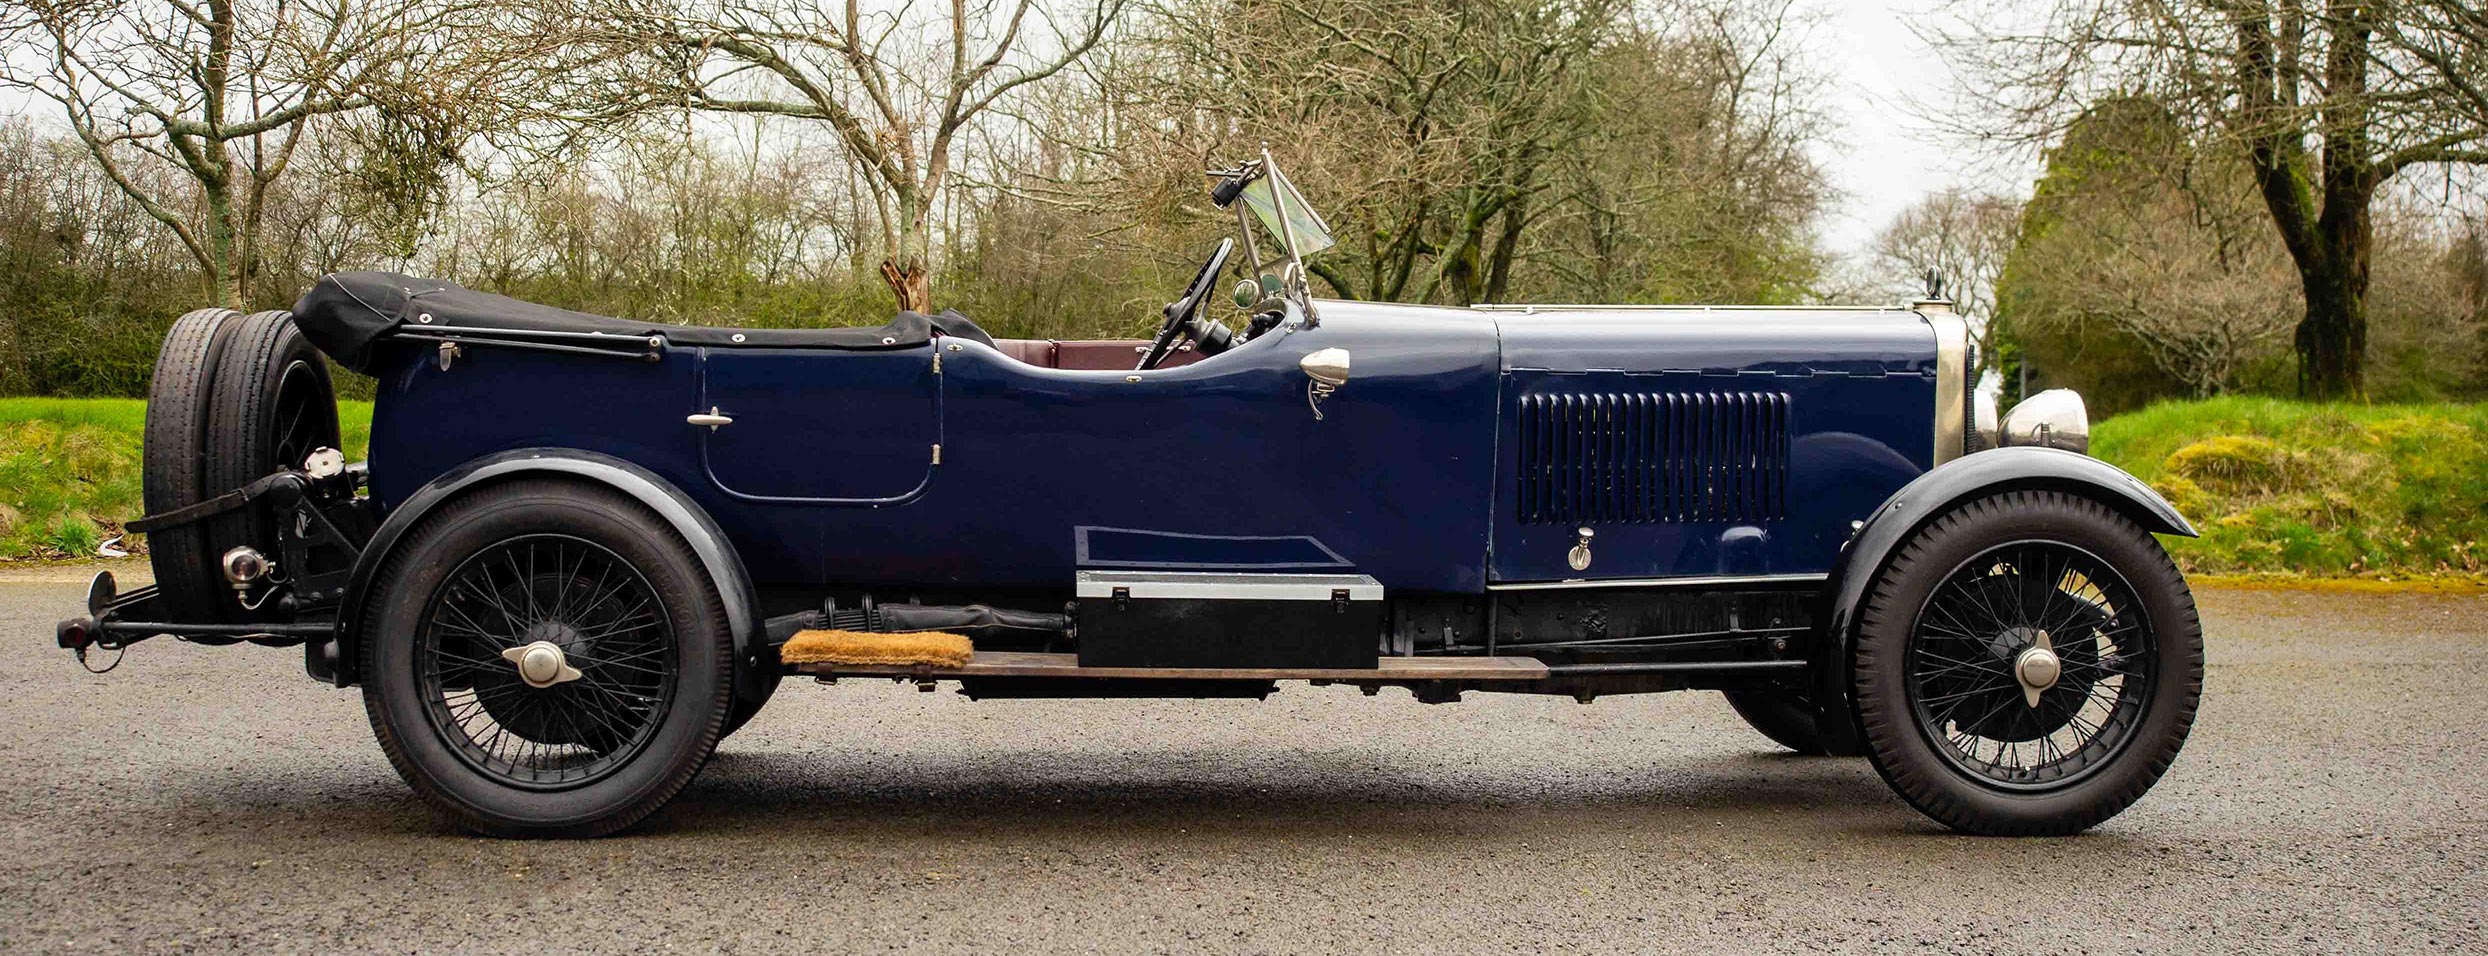 1936 Bentley 4.25 Litre All-weather by Vanden Plas